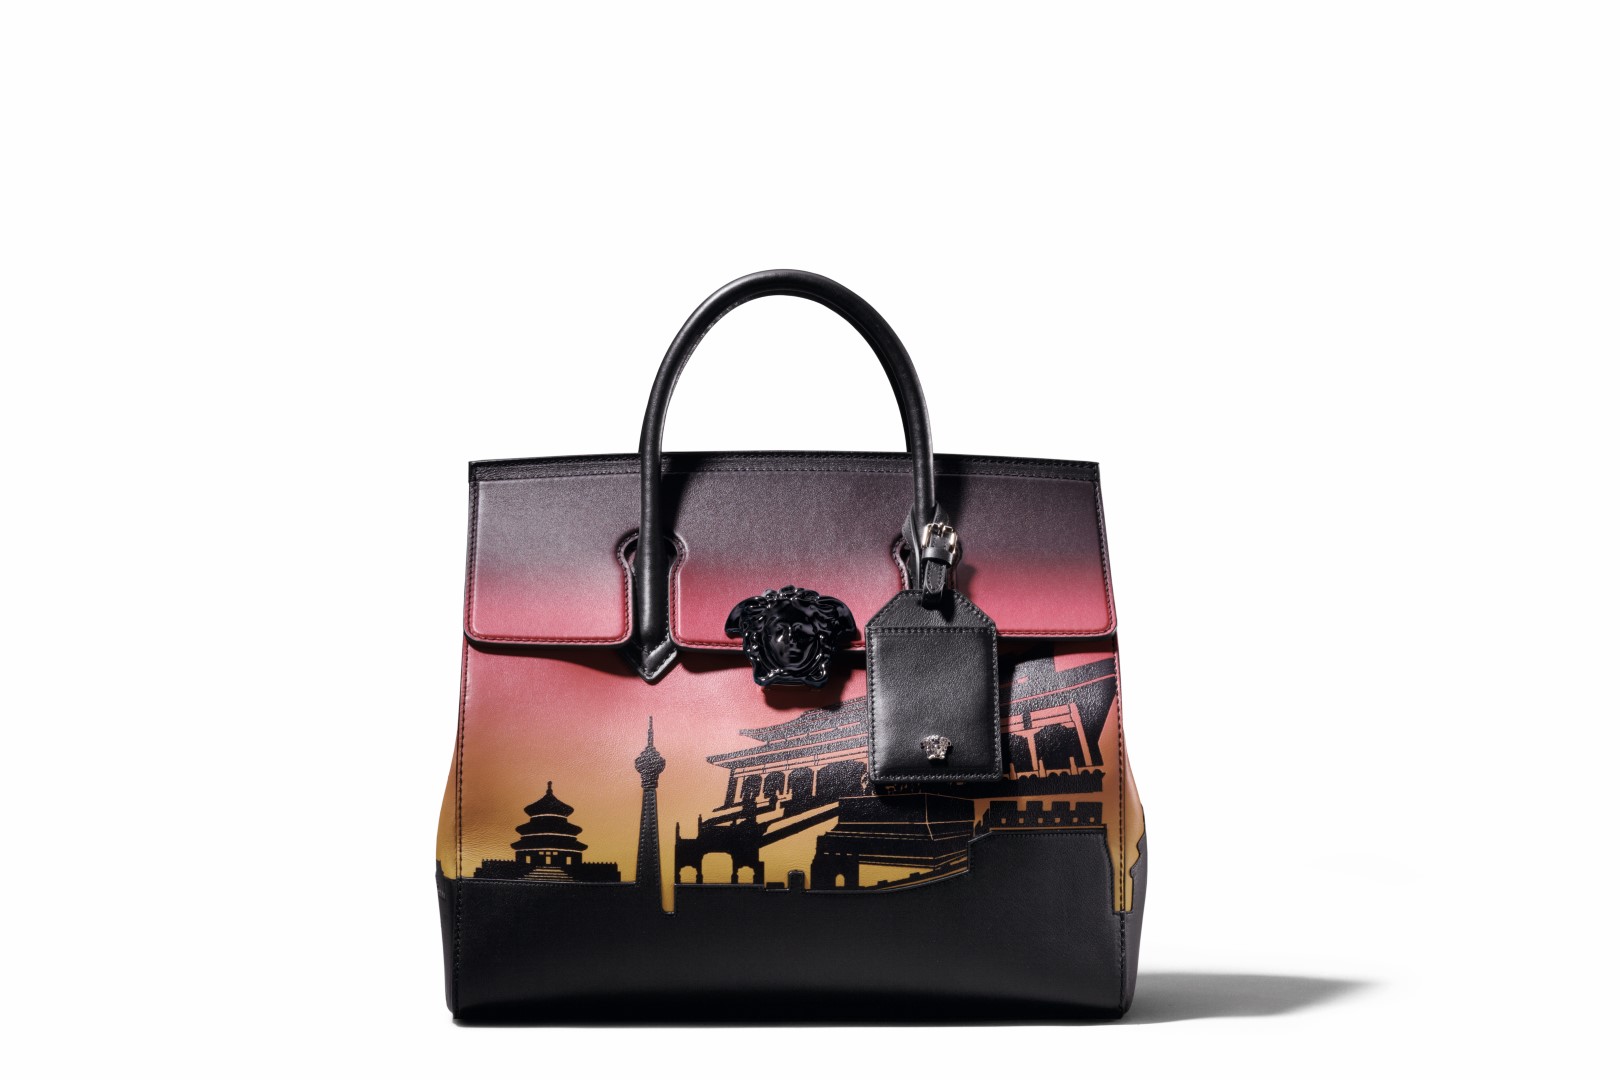 Versace borse 2016: la speciale Limited Edition Palazzo Empire, le foto